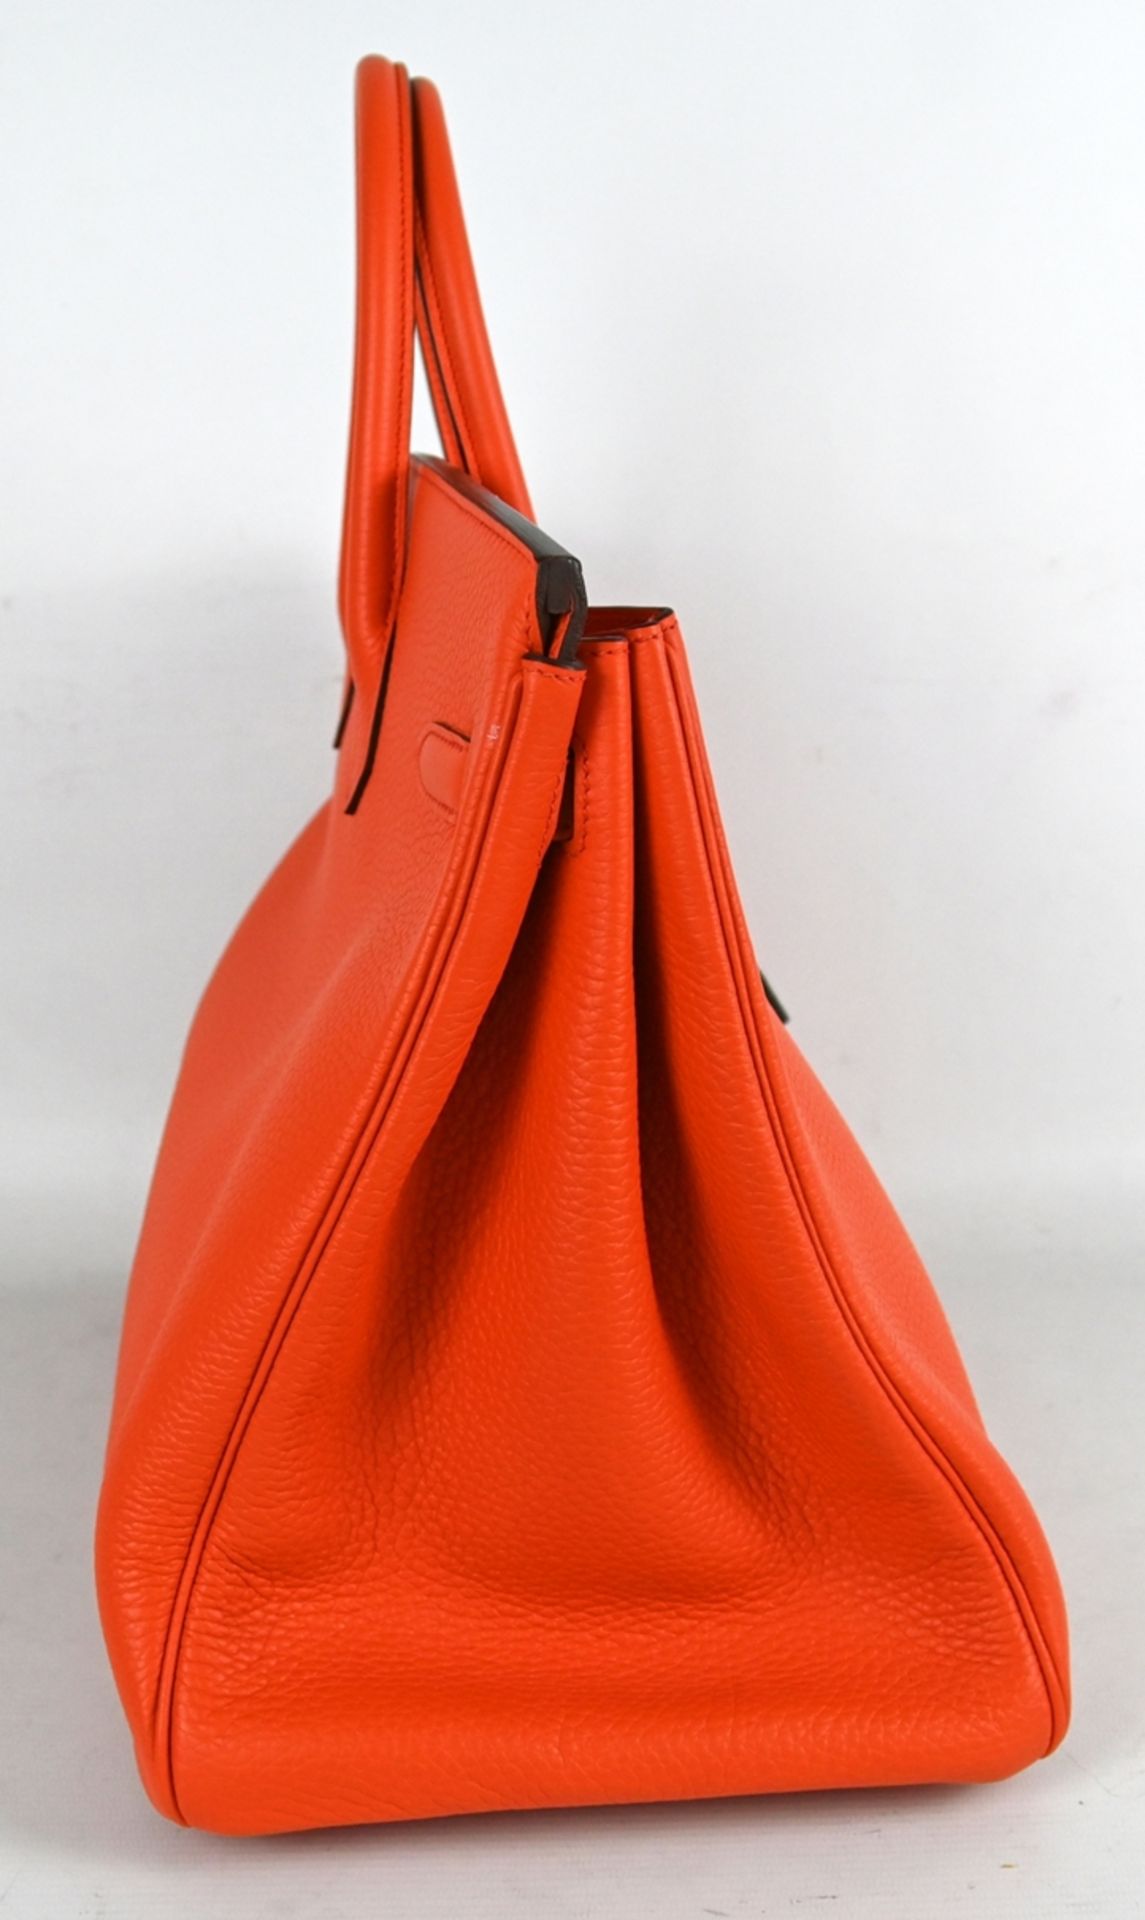 HANDTASCHE HERMÈS Birkin Bag 40, Poppy Orange, klassische Lederhandtasche mit Lederinnenfutter, zwe - Bild 5 aus 9